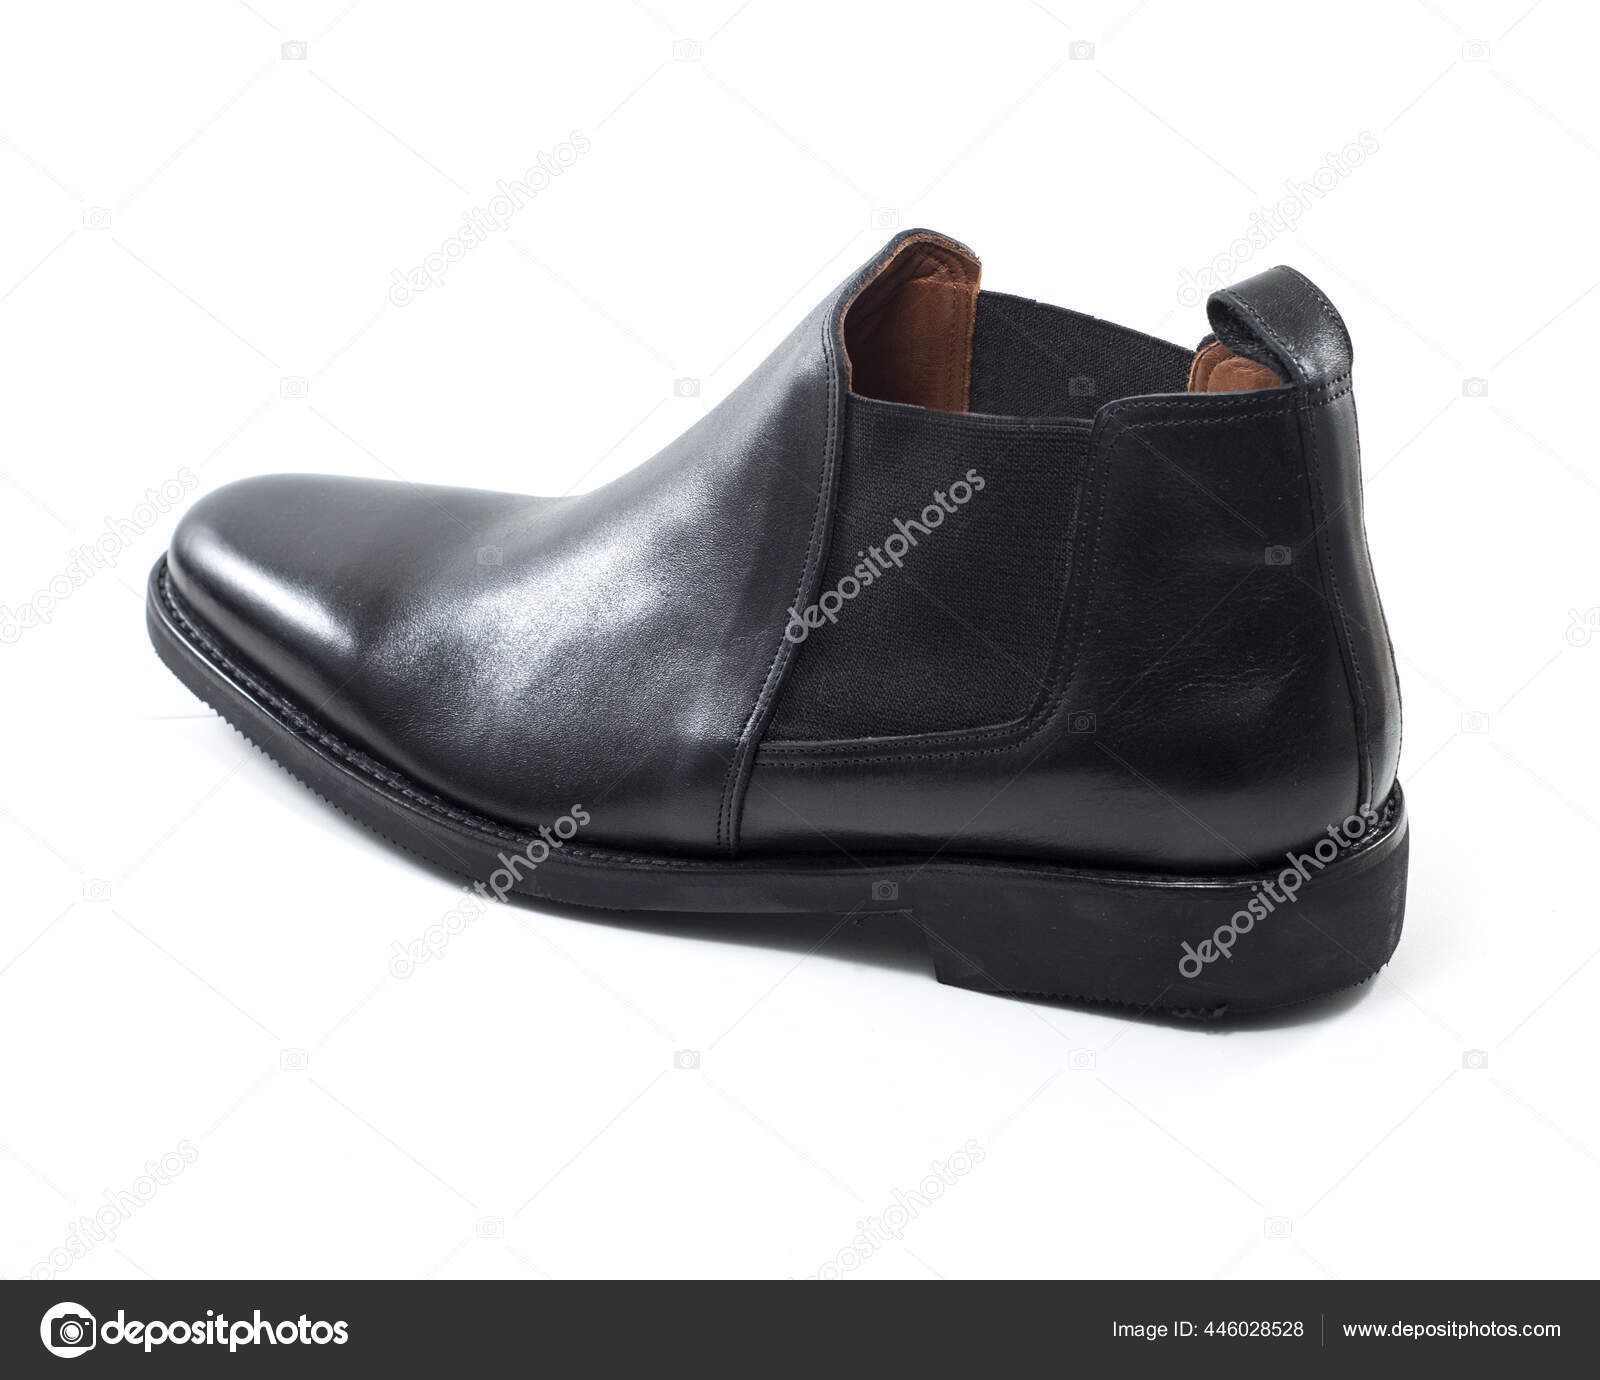 Los invitados Torrente Reino Primer Plano Zapatos Hombre Cuero Negro Aislados Sobre Fondo Blanco:  fotografía de stock © Wirestock #446028528 | Depositphotos